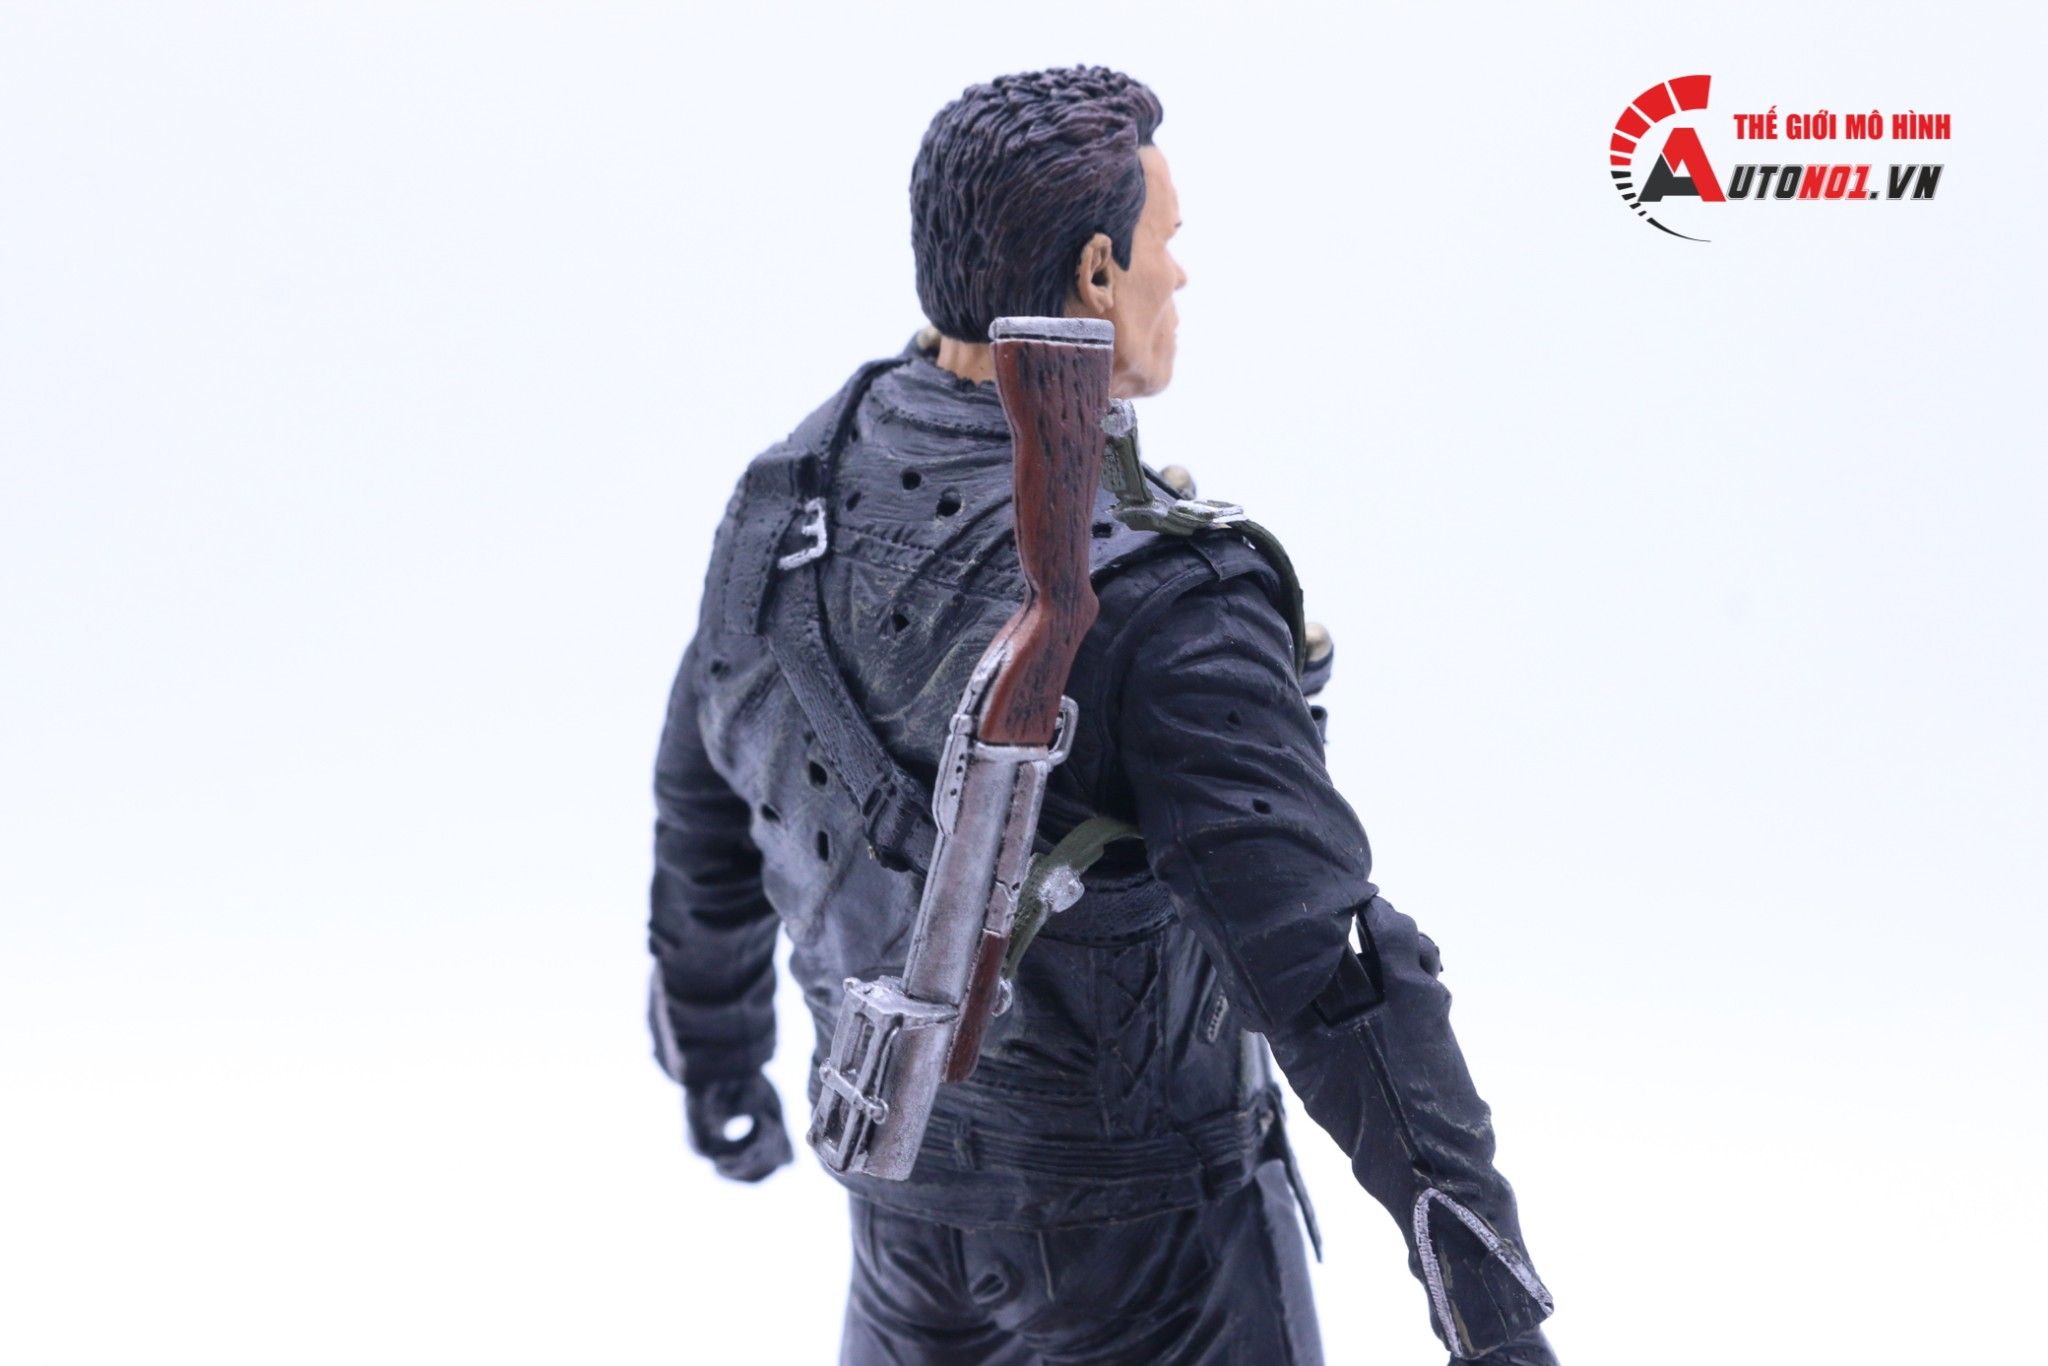  Mô hình nhân vật Terminator T-800 Cyberdyne Showdown 17cm Real Toys FG179 